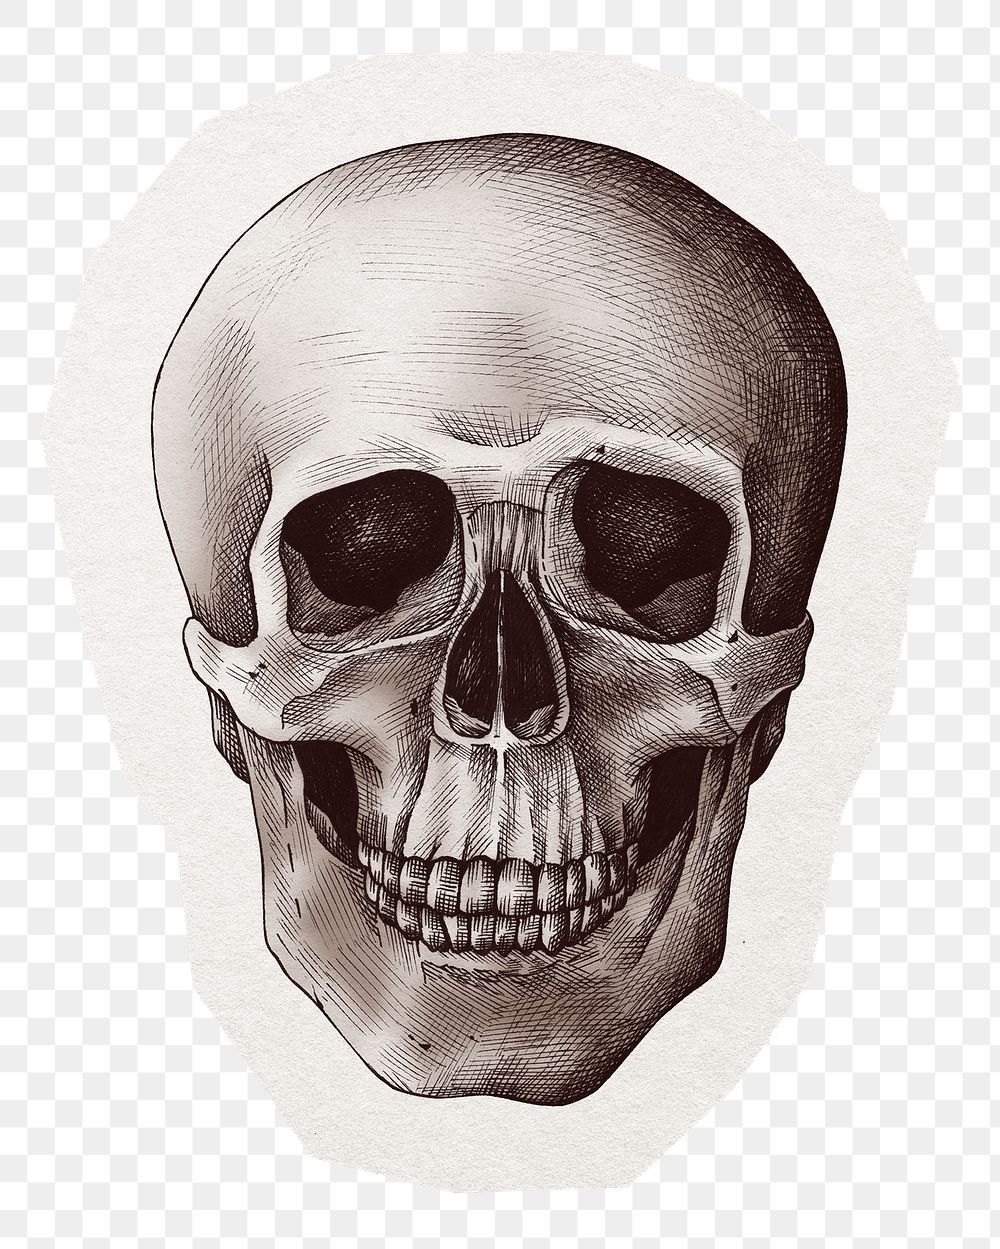 Skull illustration png sticker, transparent background